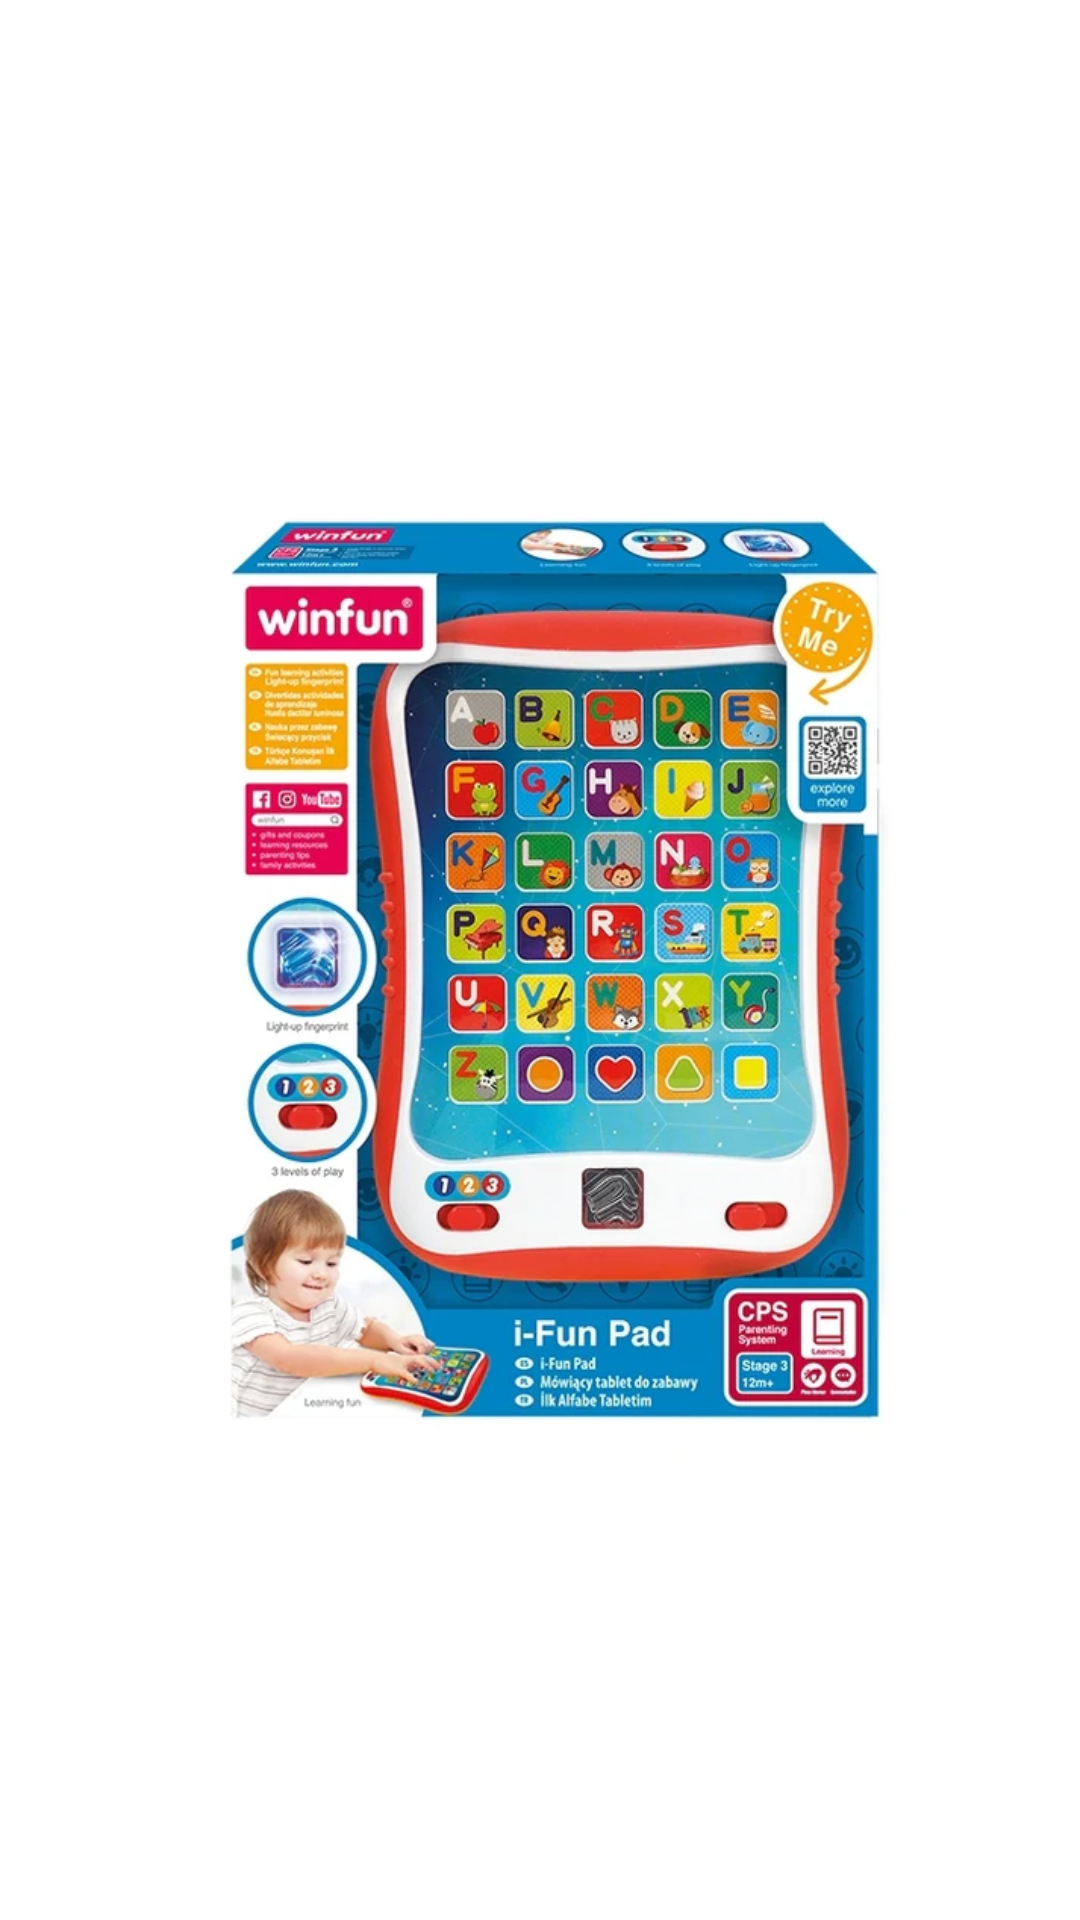 Winfun i-Fun Pad